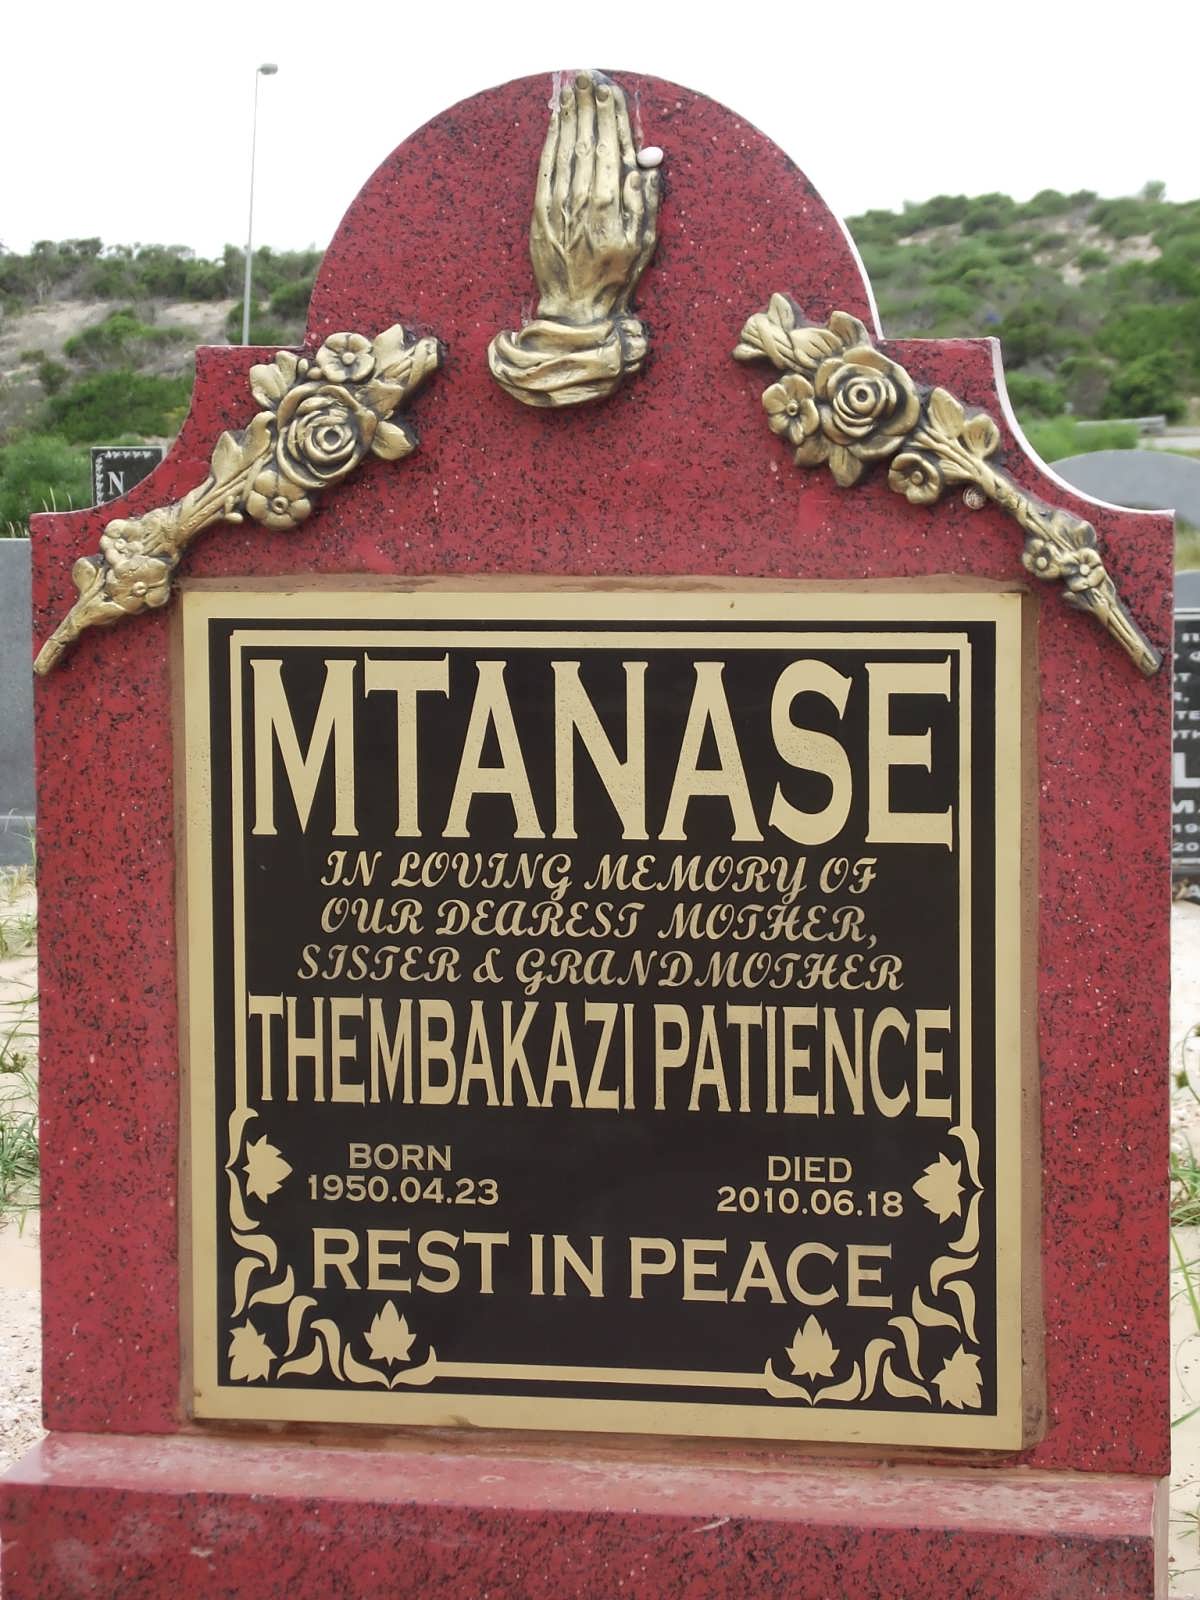 MTANASE Thembakazi Patience 1950-2010